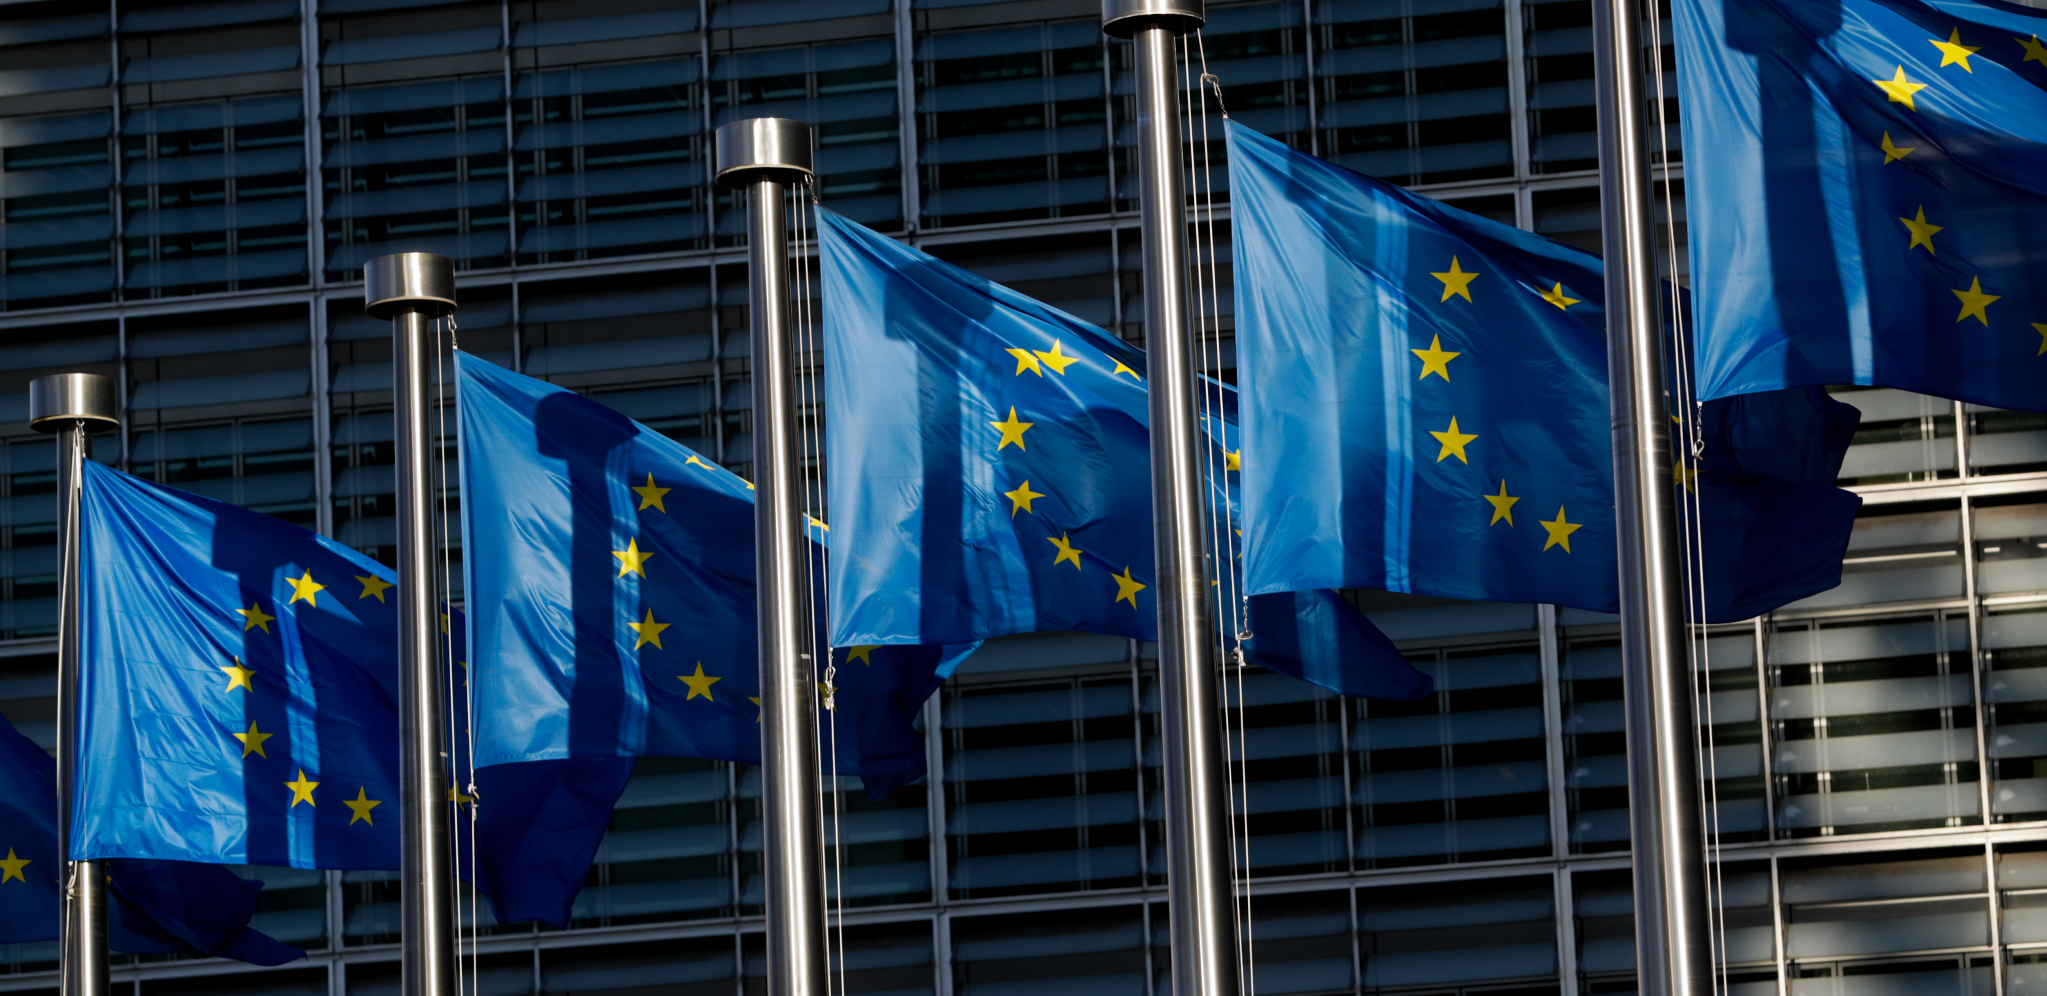 EU uplatila prva bespovratna sredstva: 800 miliona evra za 16 zemalja